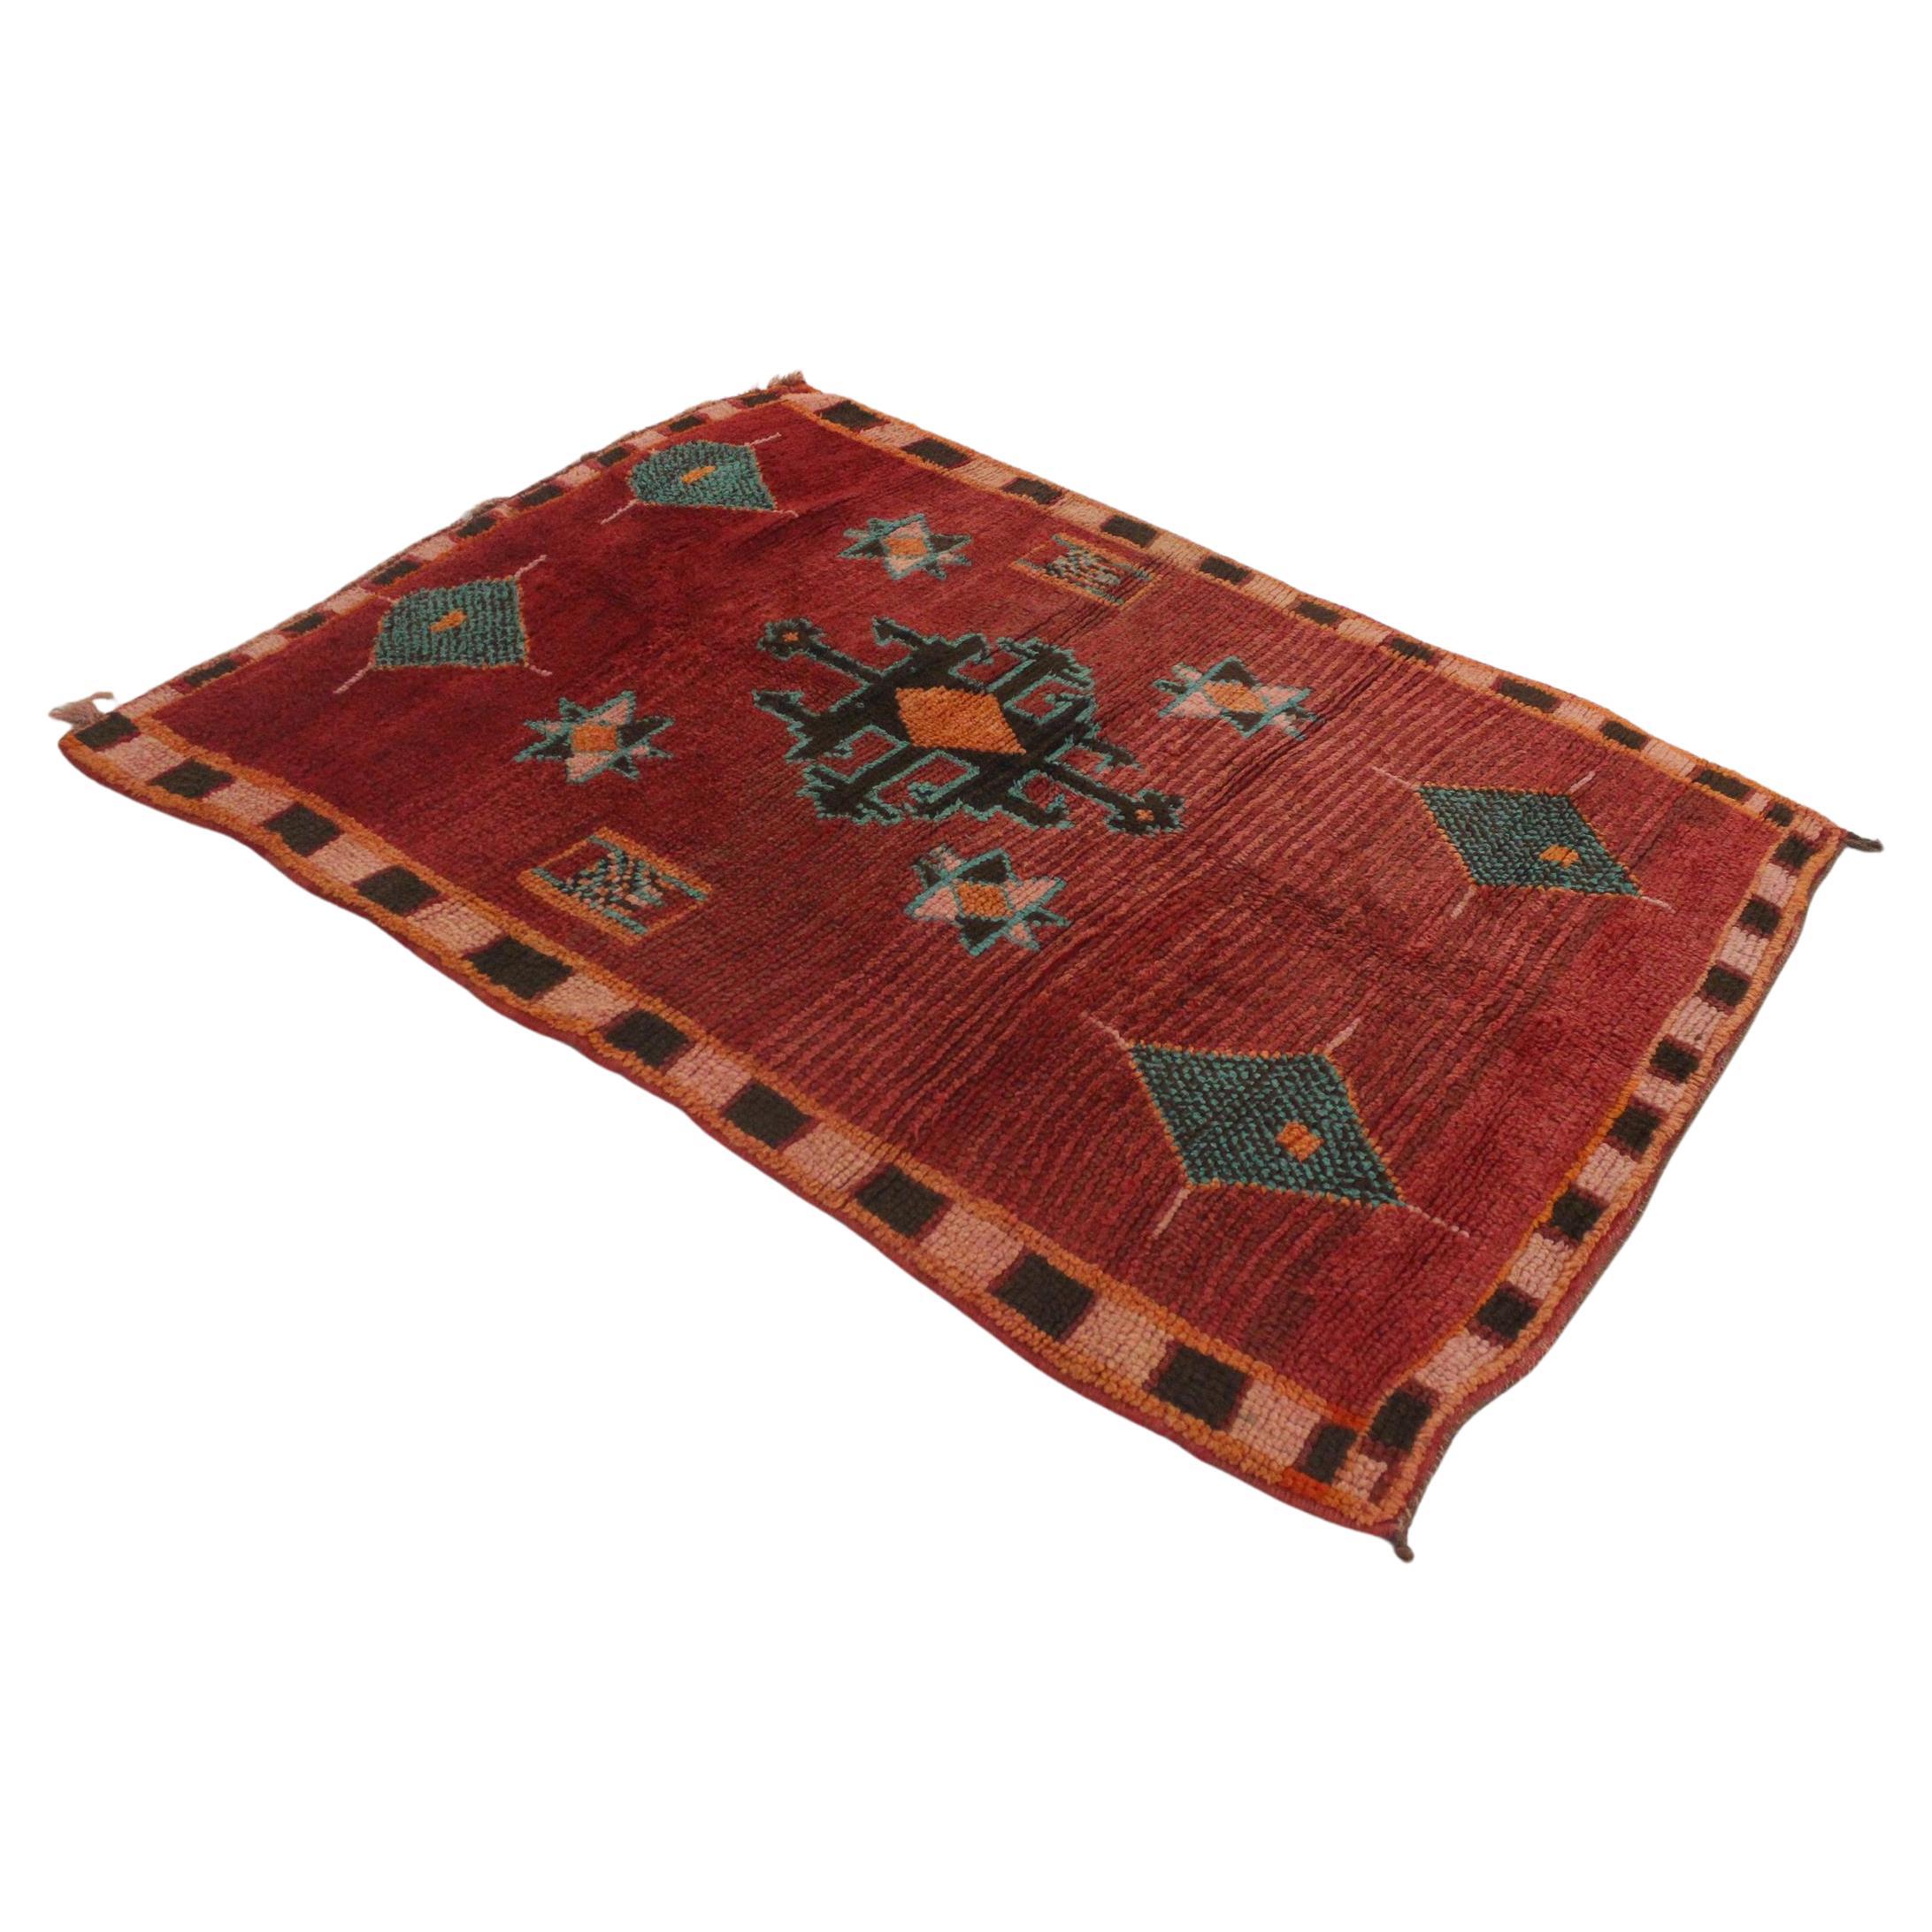 Tapis Azilal marocain vintage rouge et turquoise - 4,1 x 5,8 pieds / 127 x177 cm